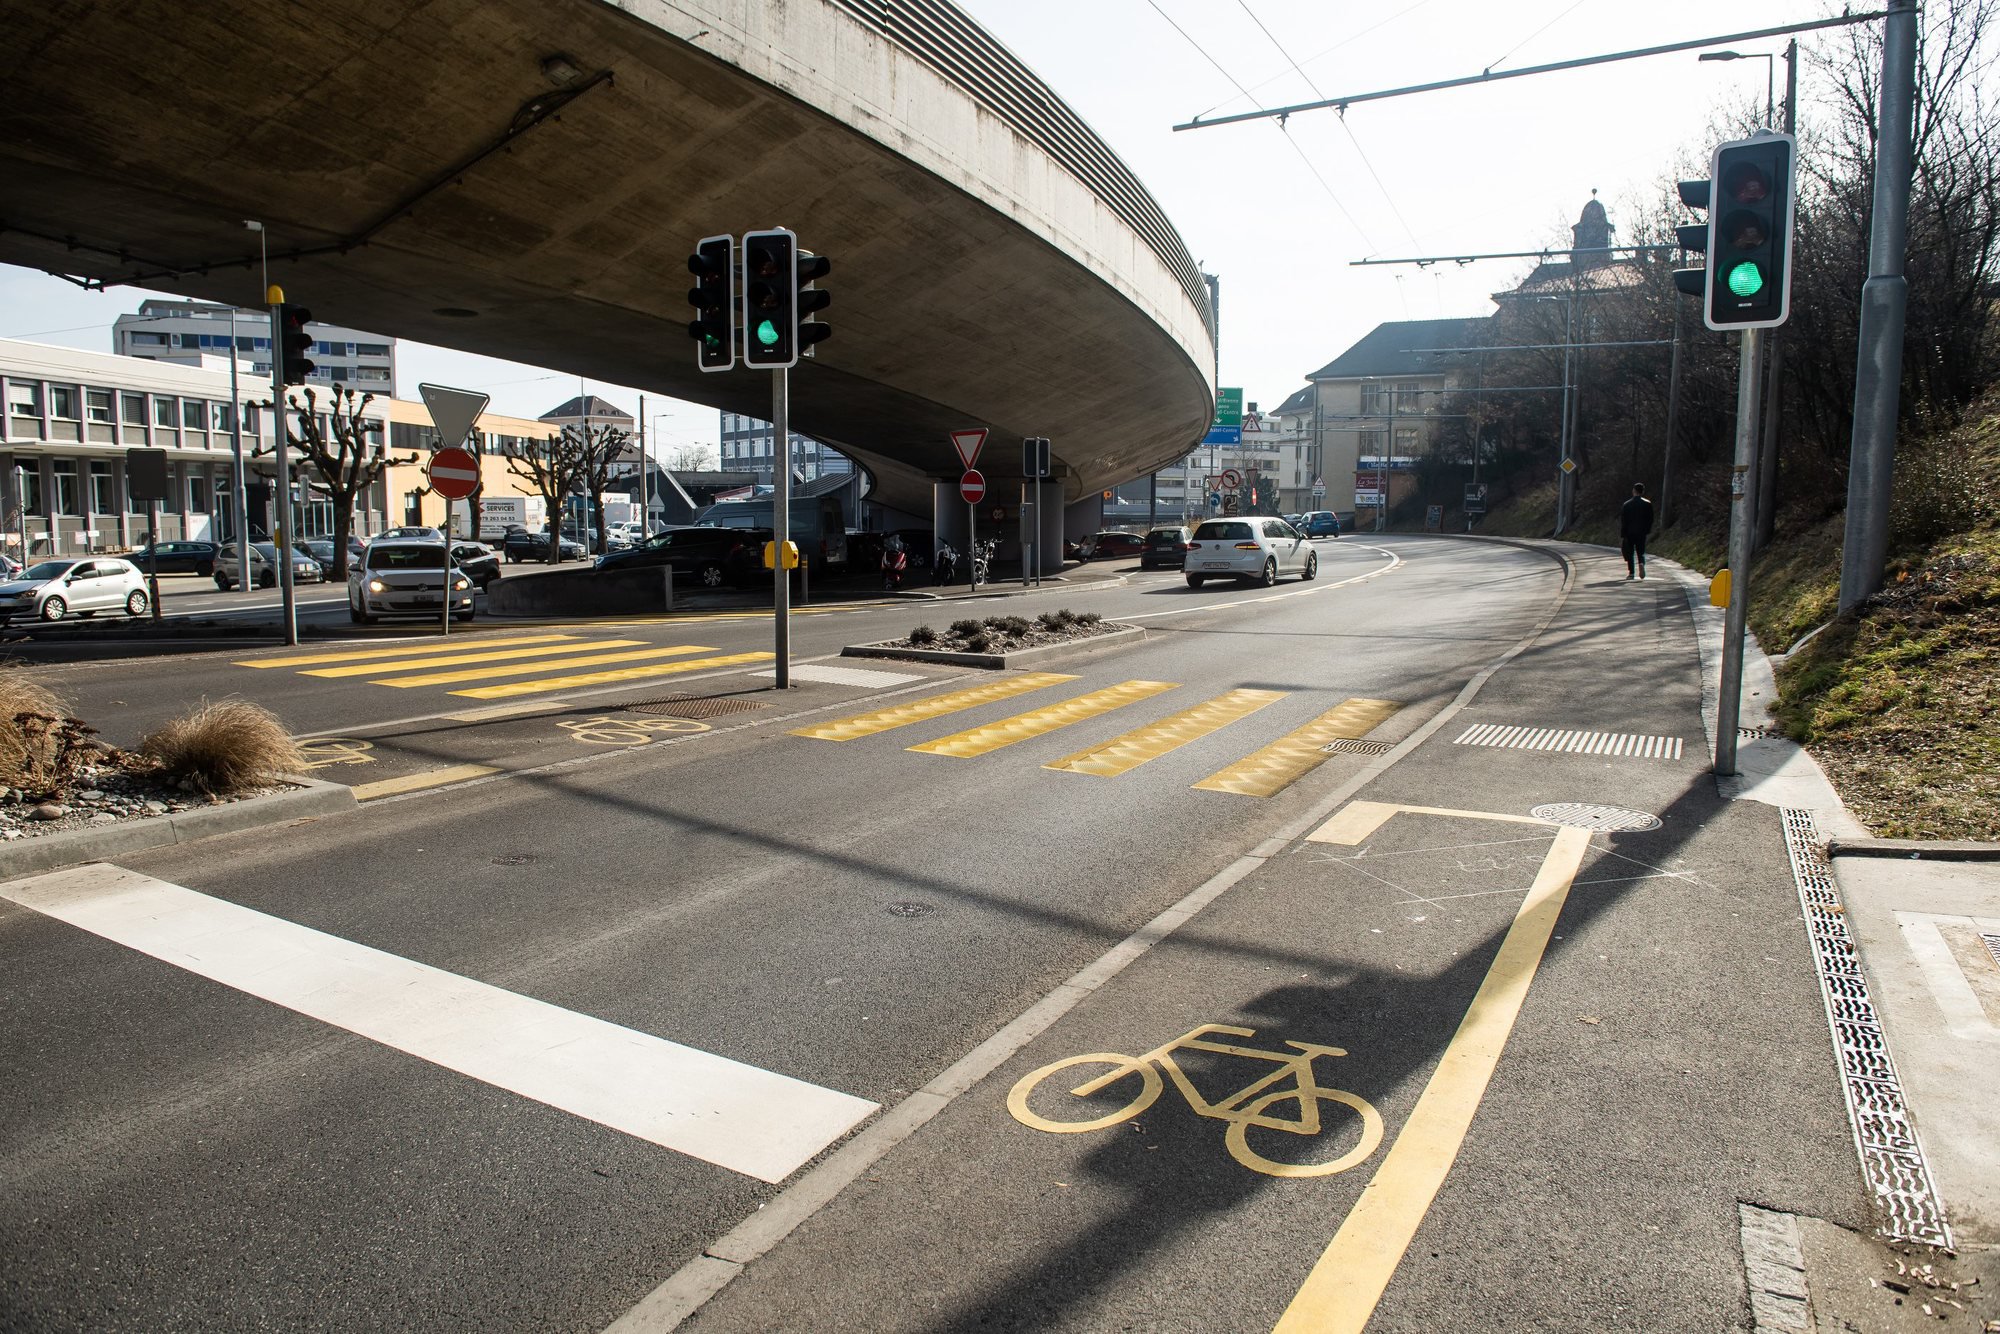 Le giratoire de Vauseyon propose des itinéraires peu attractifs pour les cyclistes, selon Pro Vélo.